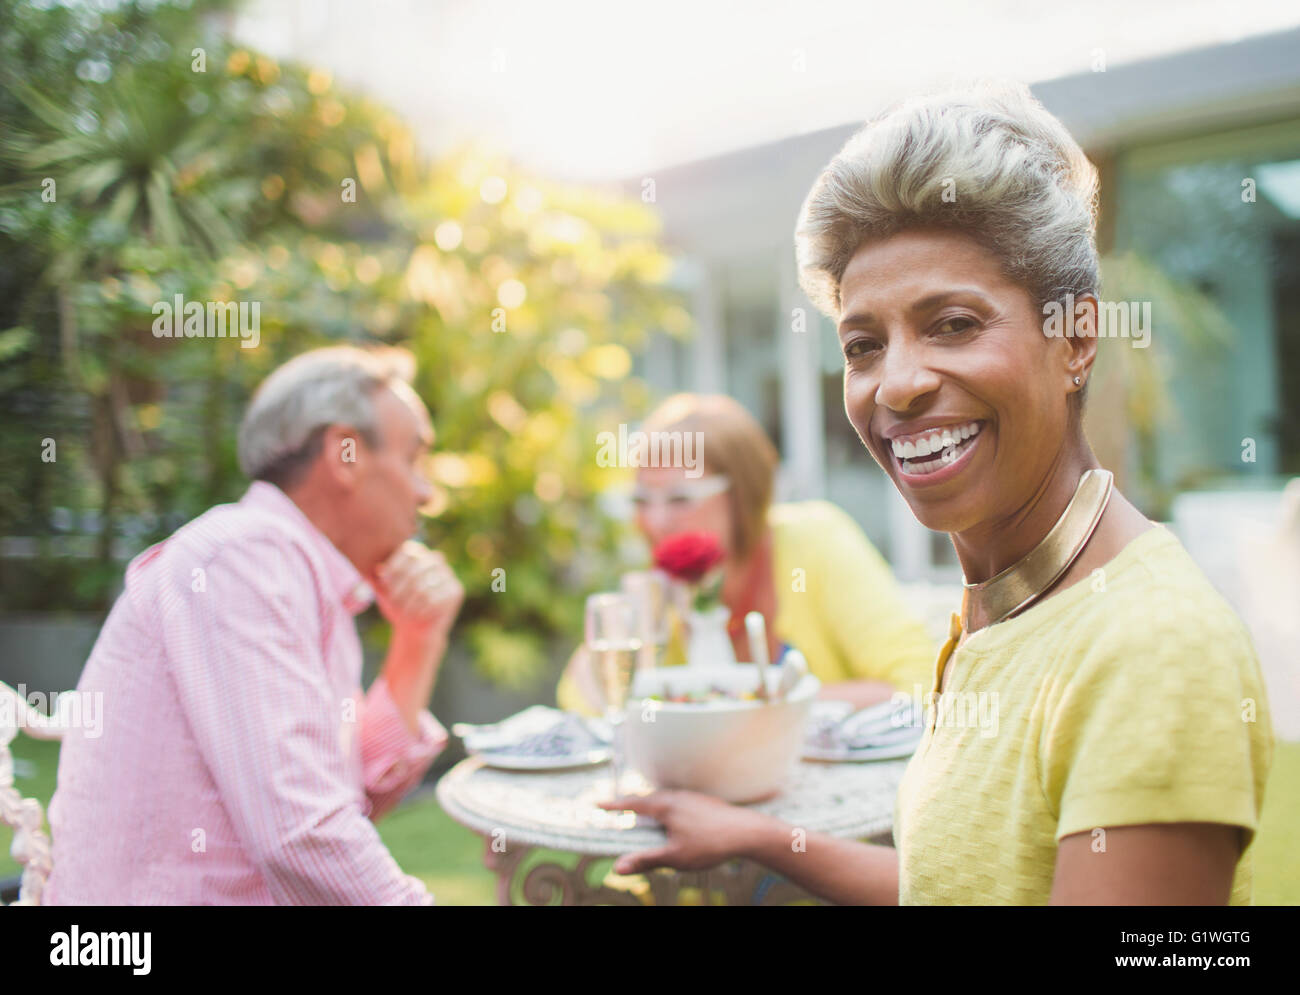 Retrato sonriente mujer madura disfrutando del almuerzo con amigos en el jardín Foto de stock